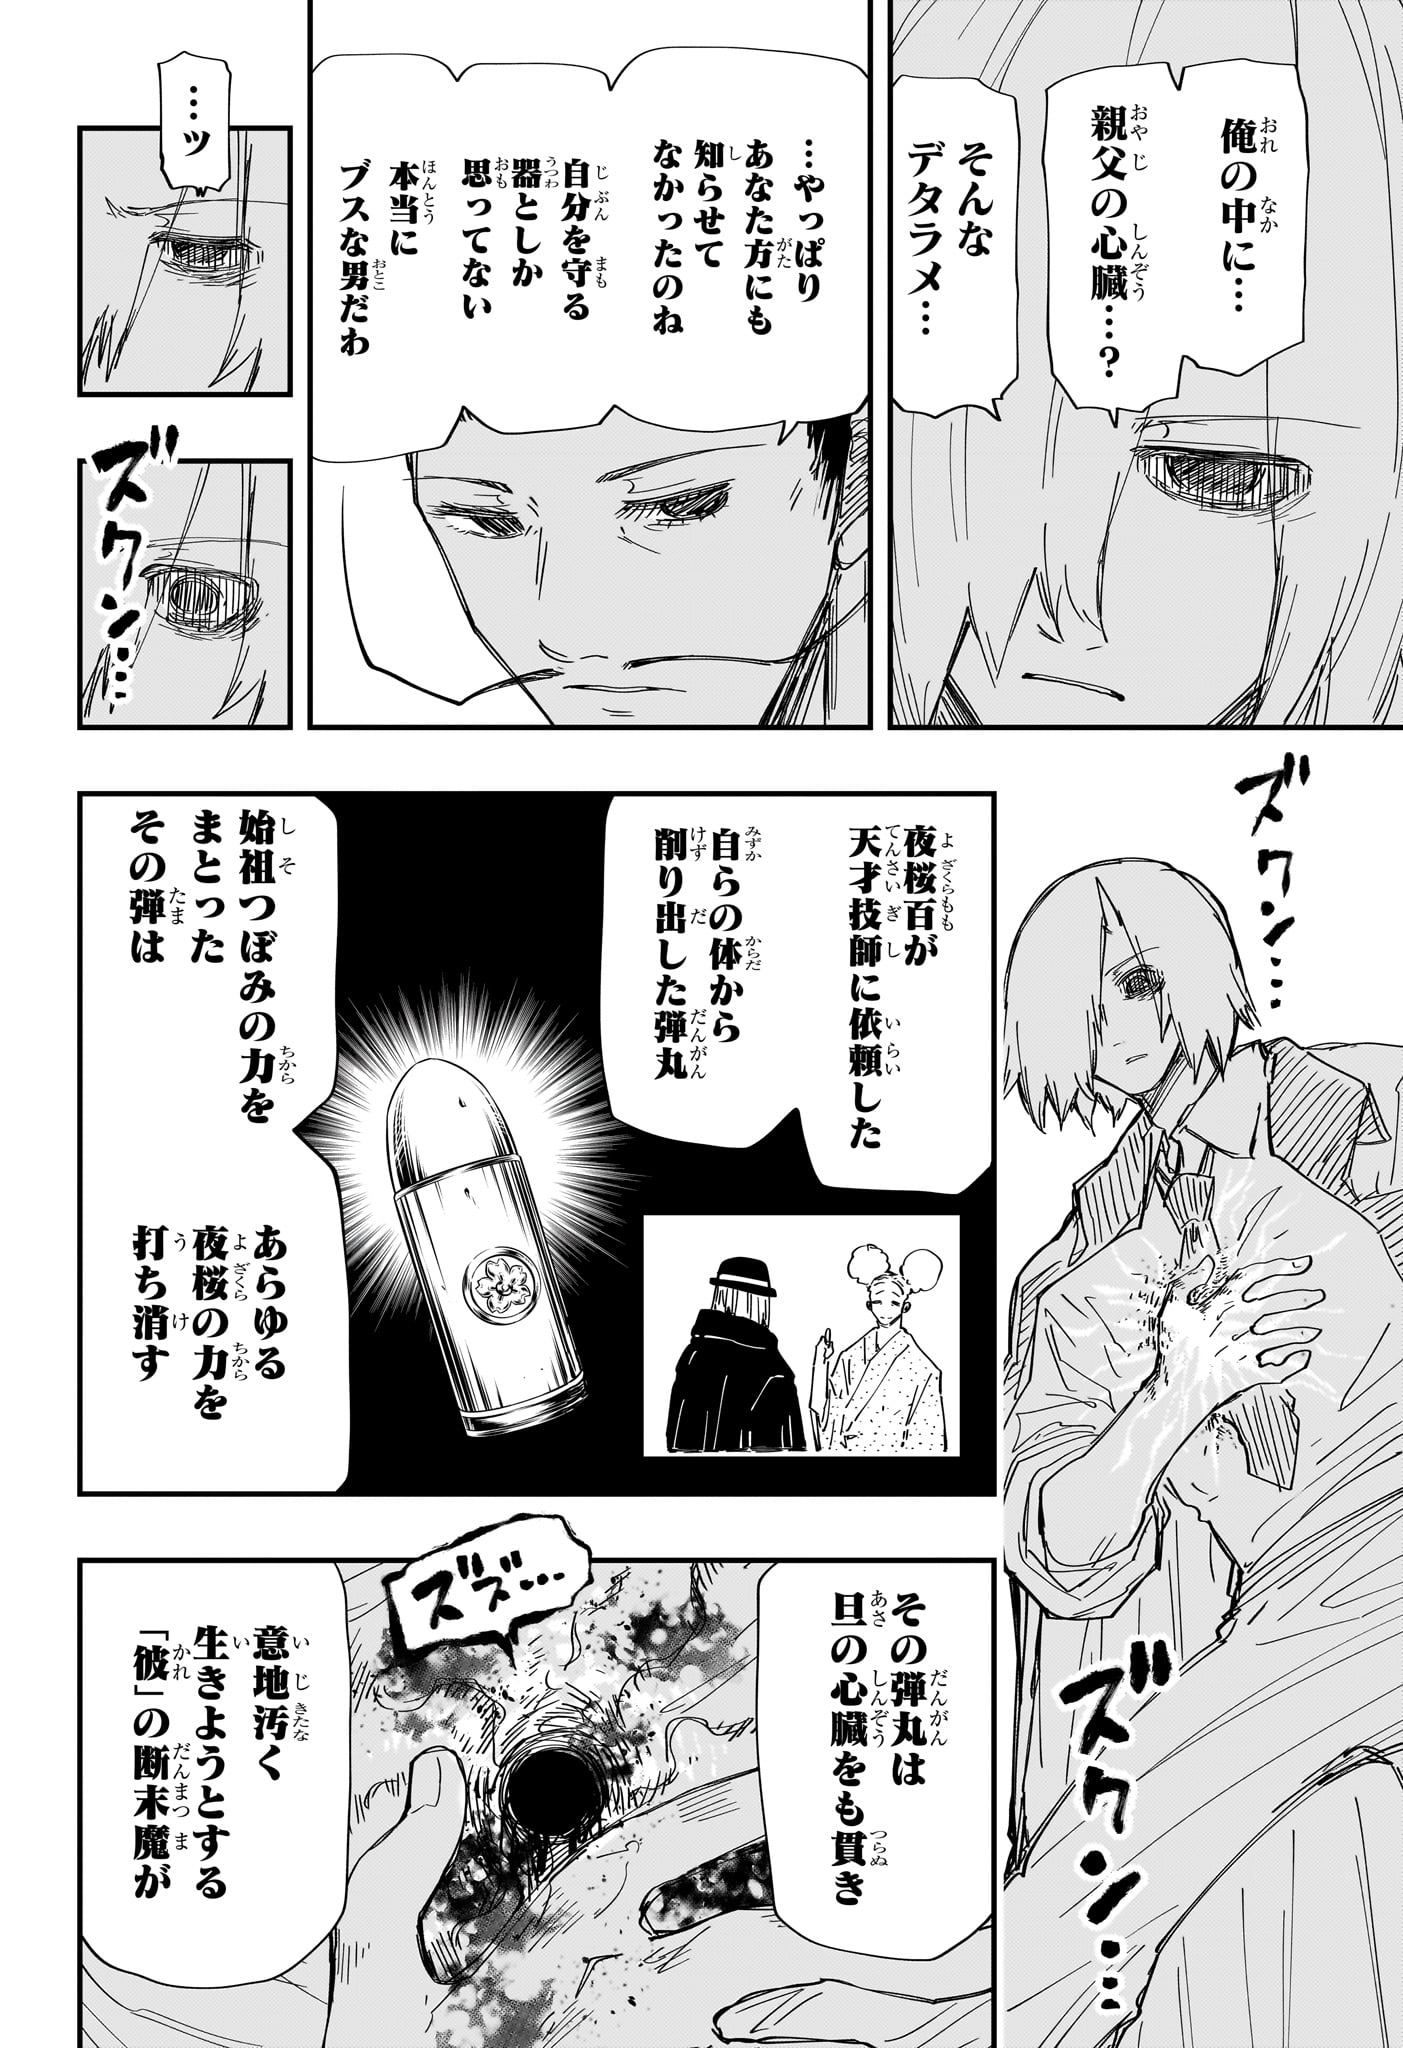 Yozakura-san Chi no Daisakusen - Chapter 235 - Page 12